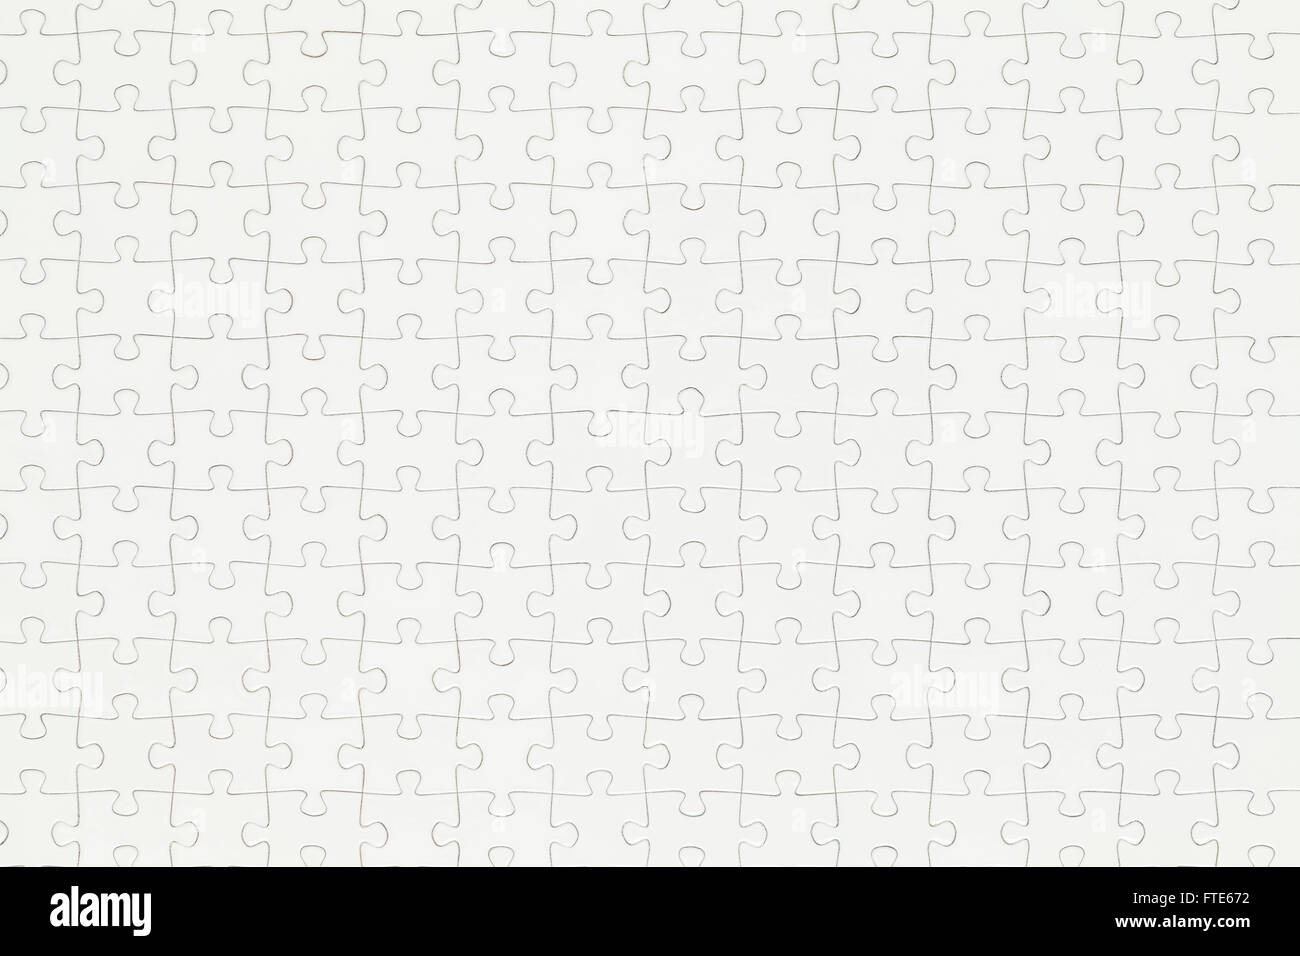 Primer plano de completado rompecabezas blanco con espacio de copia. Foto de stock